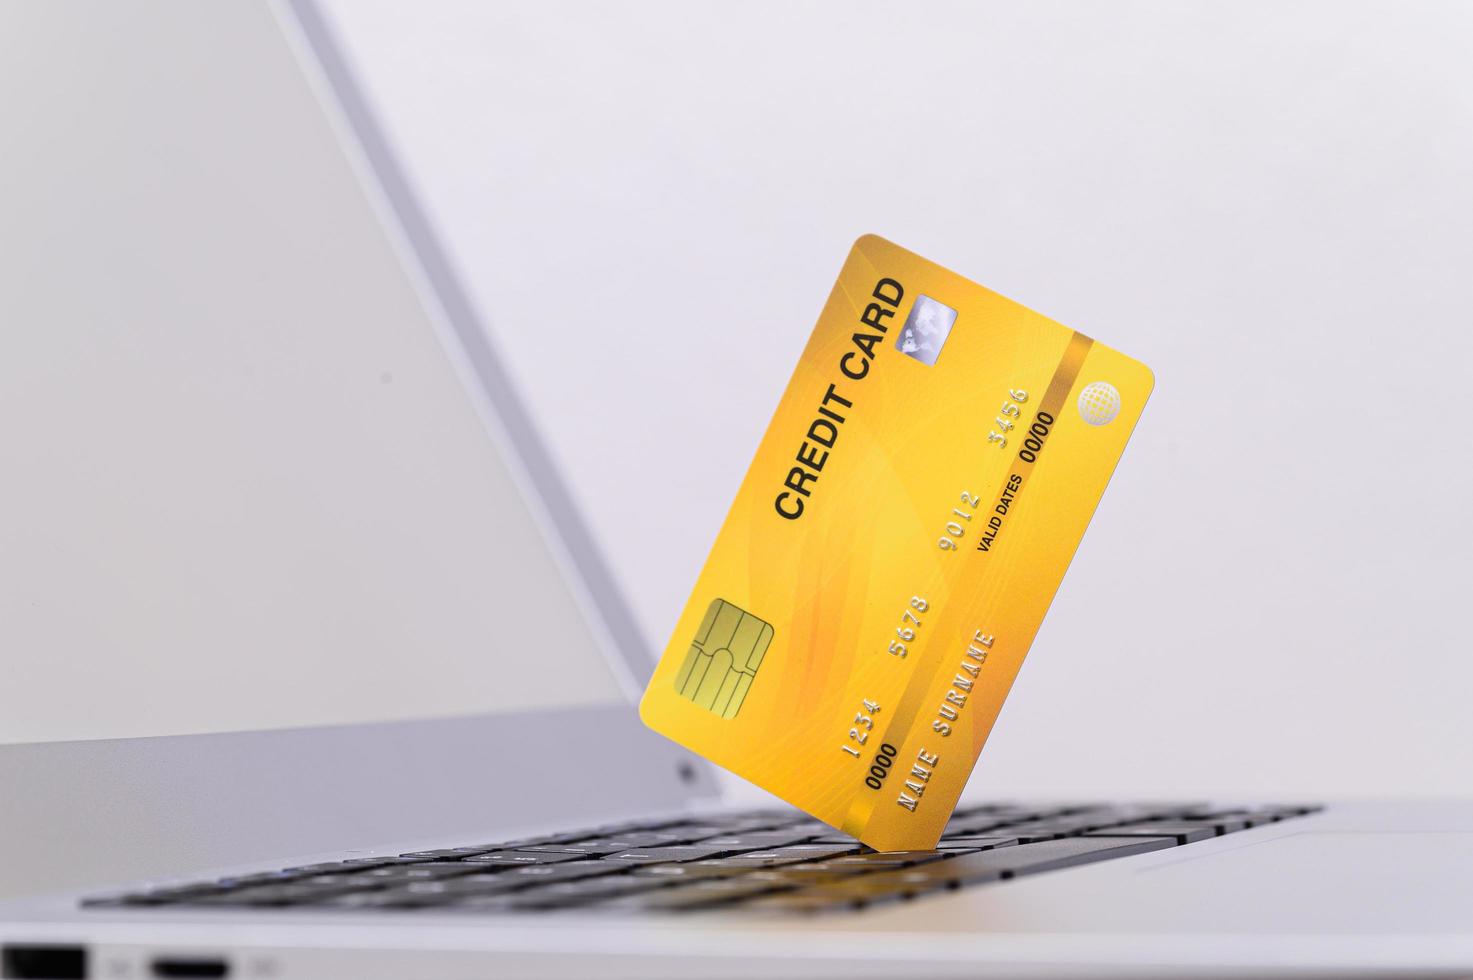 cartão de crédito amarelo no computador foto